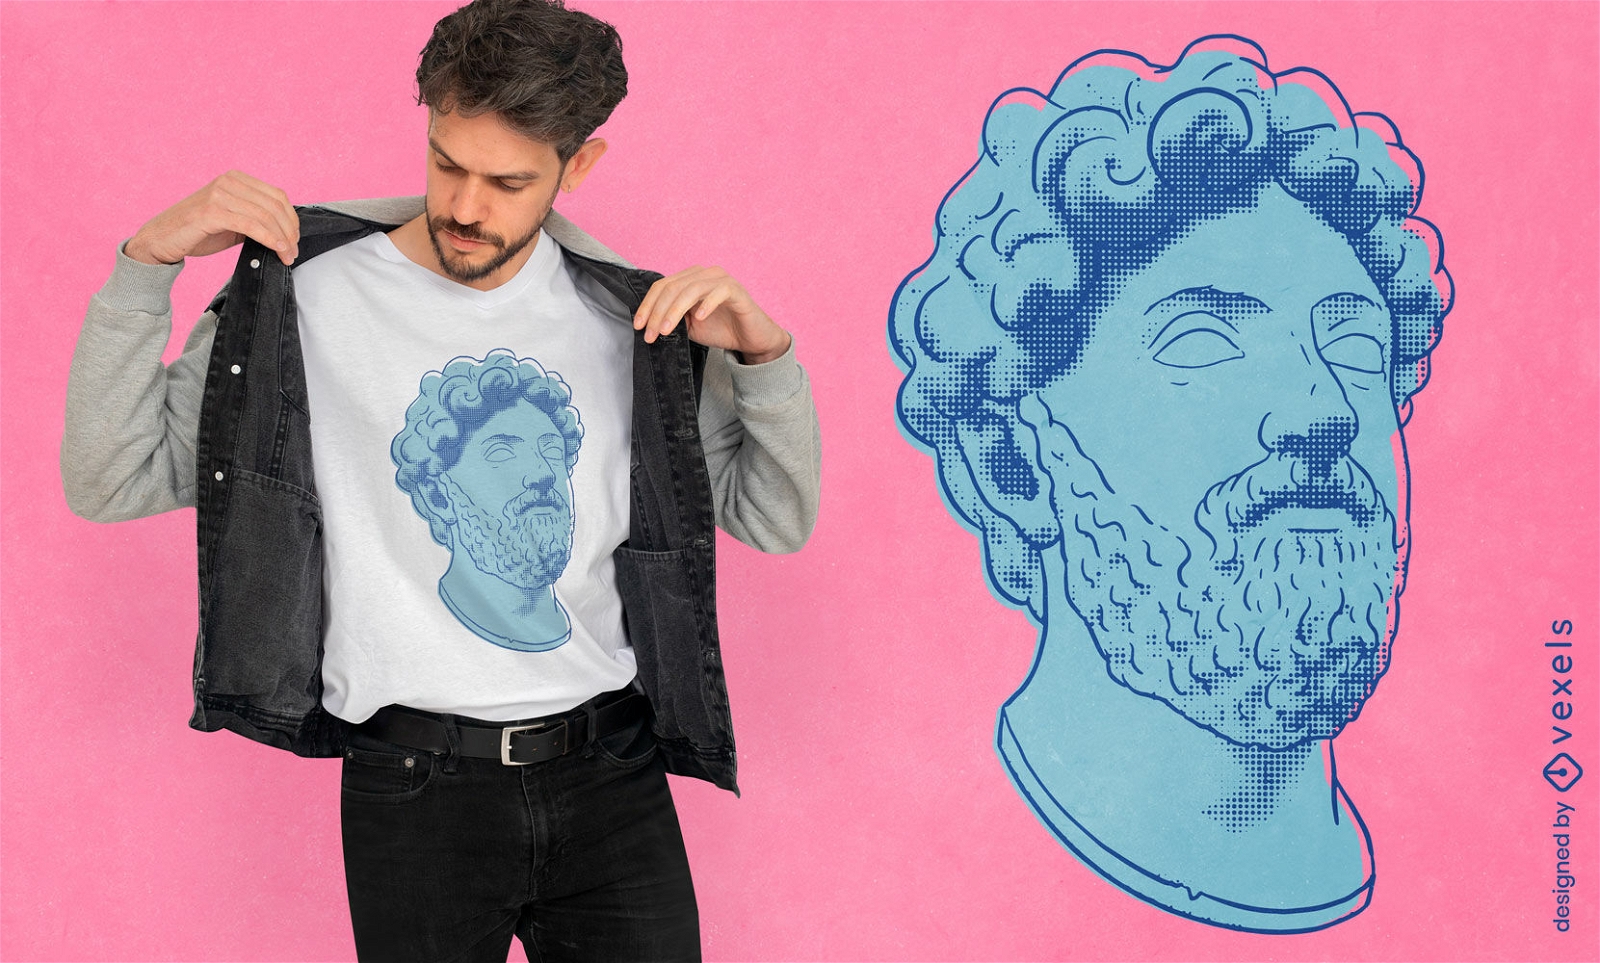 Marcus aurelius statue head t-shirt design